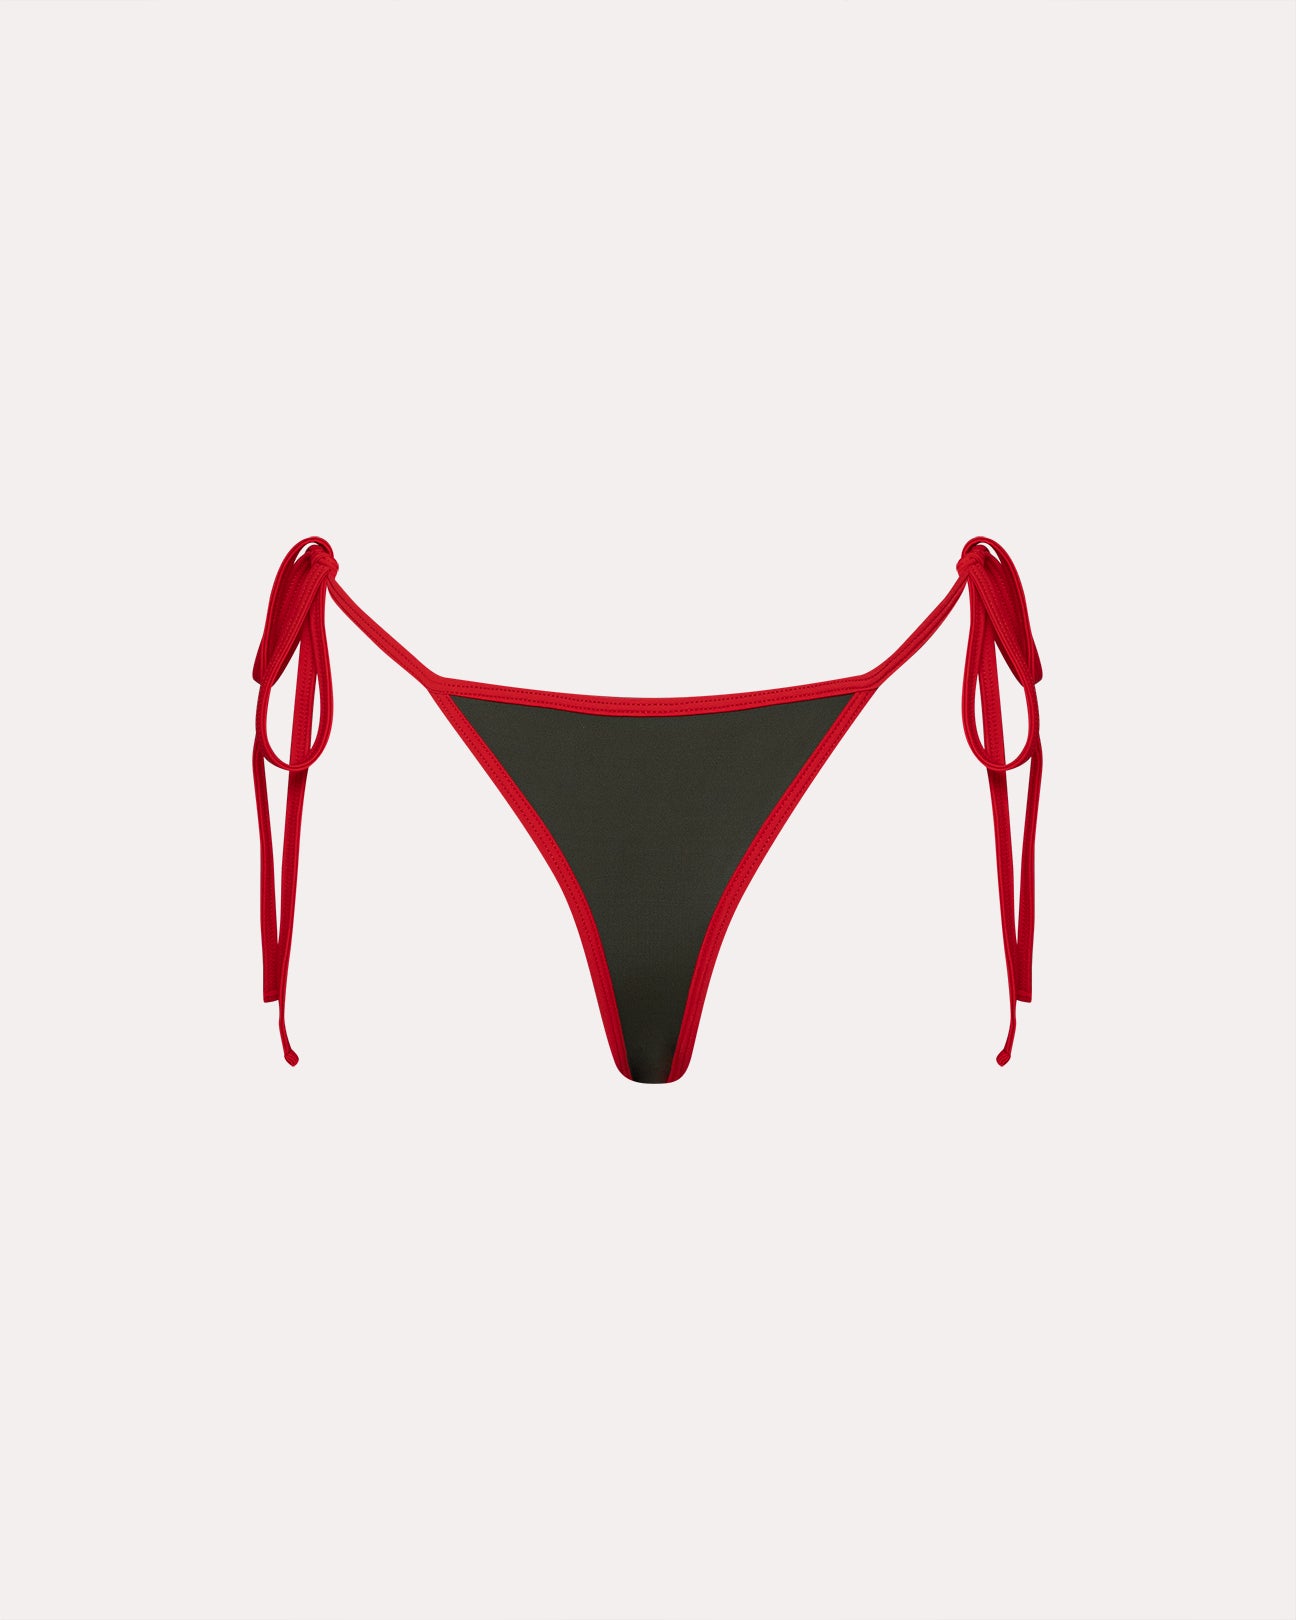 Khaki/rotes Bikini-Unterteil